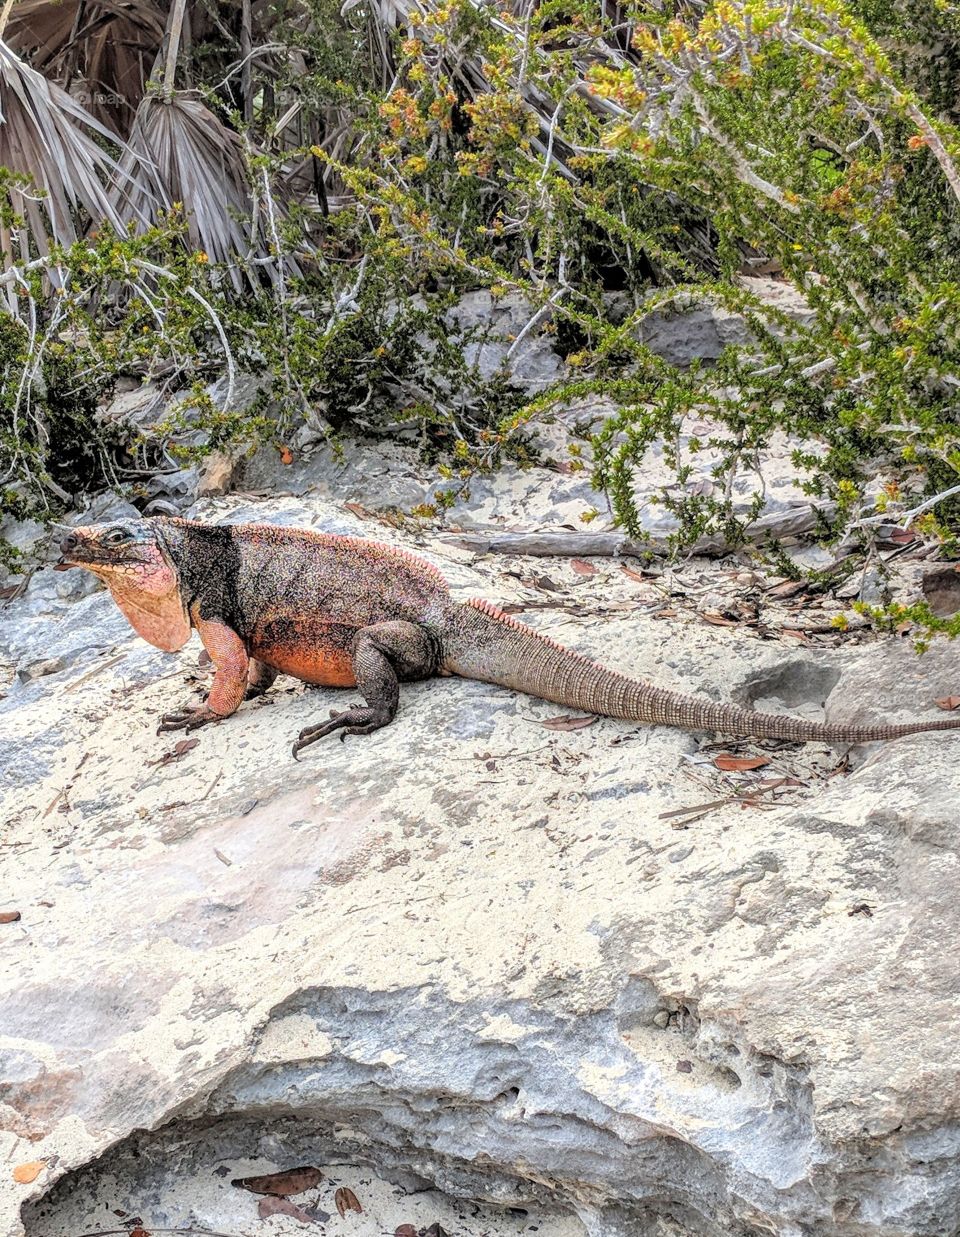 Iguana only native to the Allan's Cay, Exuma in The Bahamas.